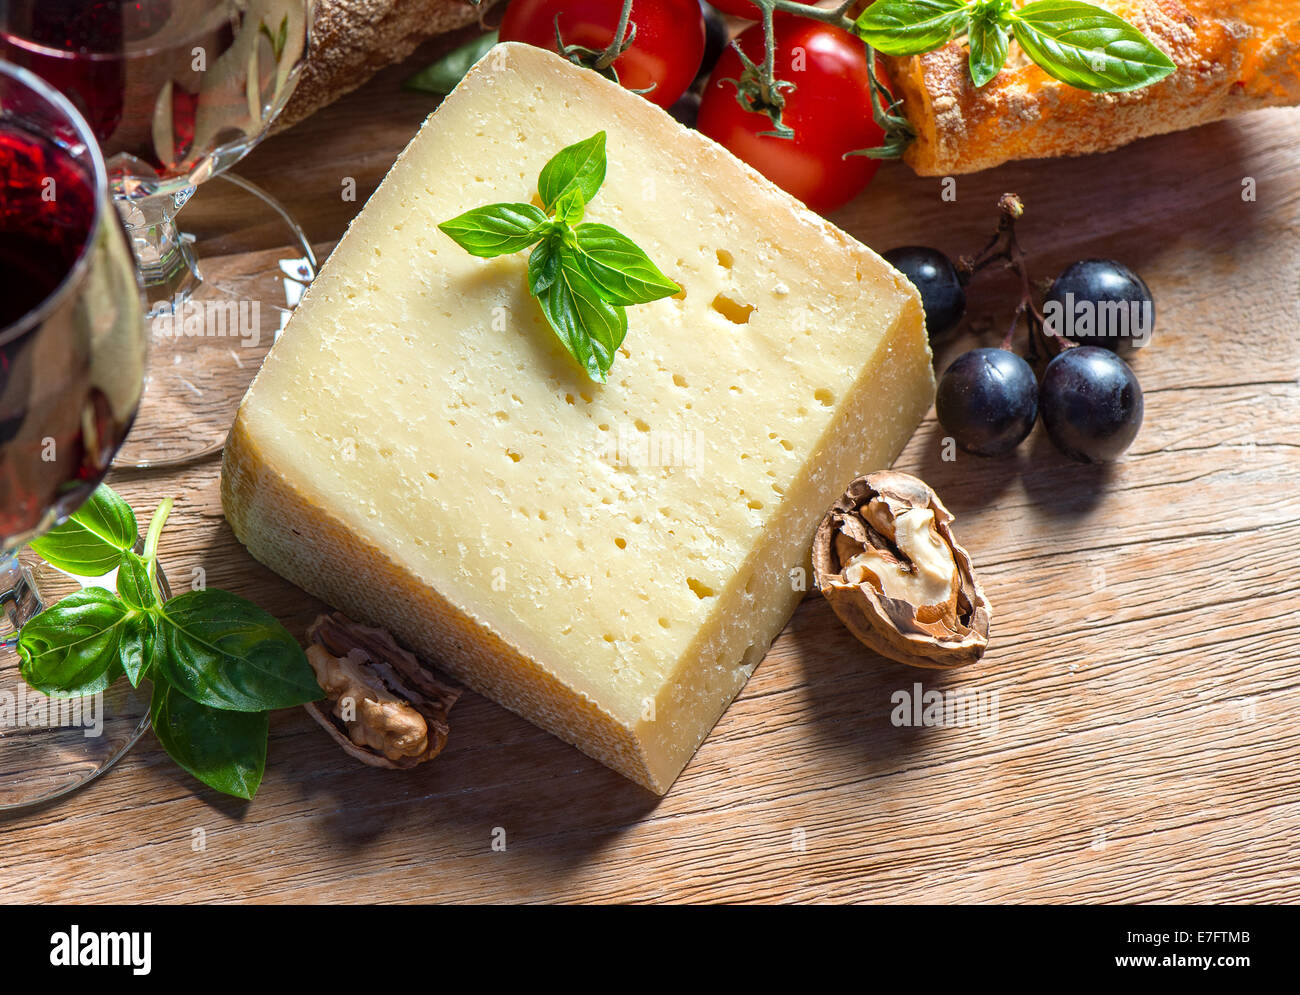 Käse mit Walnüssen, Trauben und Rotwein. Low-Key-Stil Bild Stockfoto